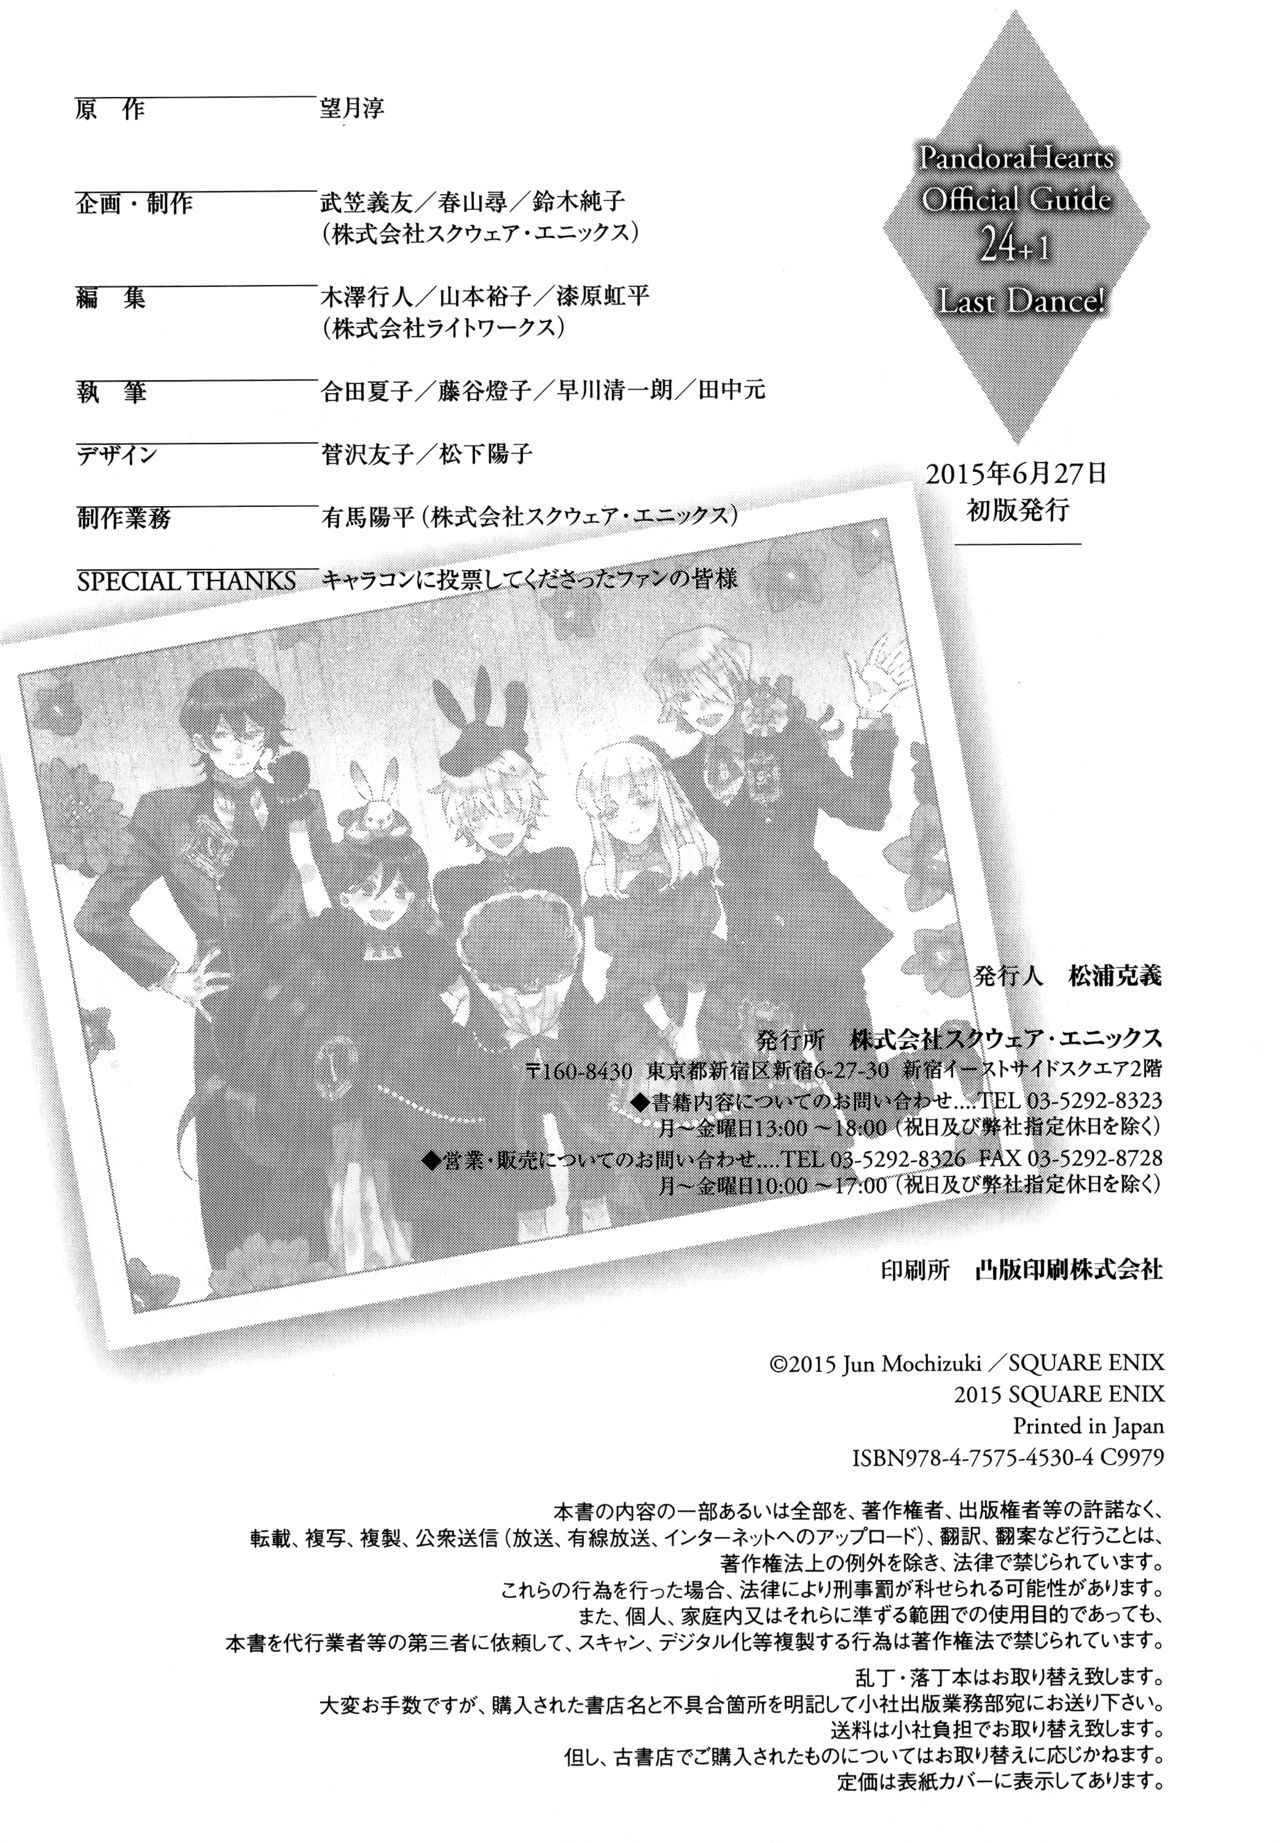 Pandora Hearts Guidebook 24+1: Last Dance パンドラハーツ オフィシャルガイド 24 + 1 ~Last Dance! 254